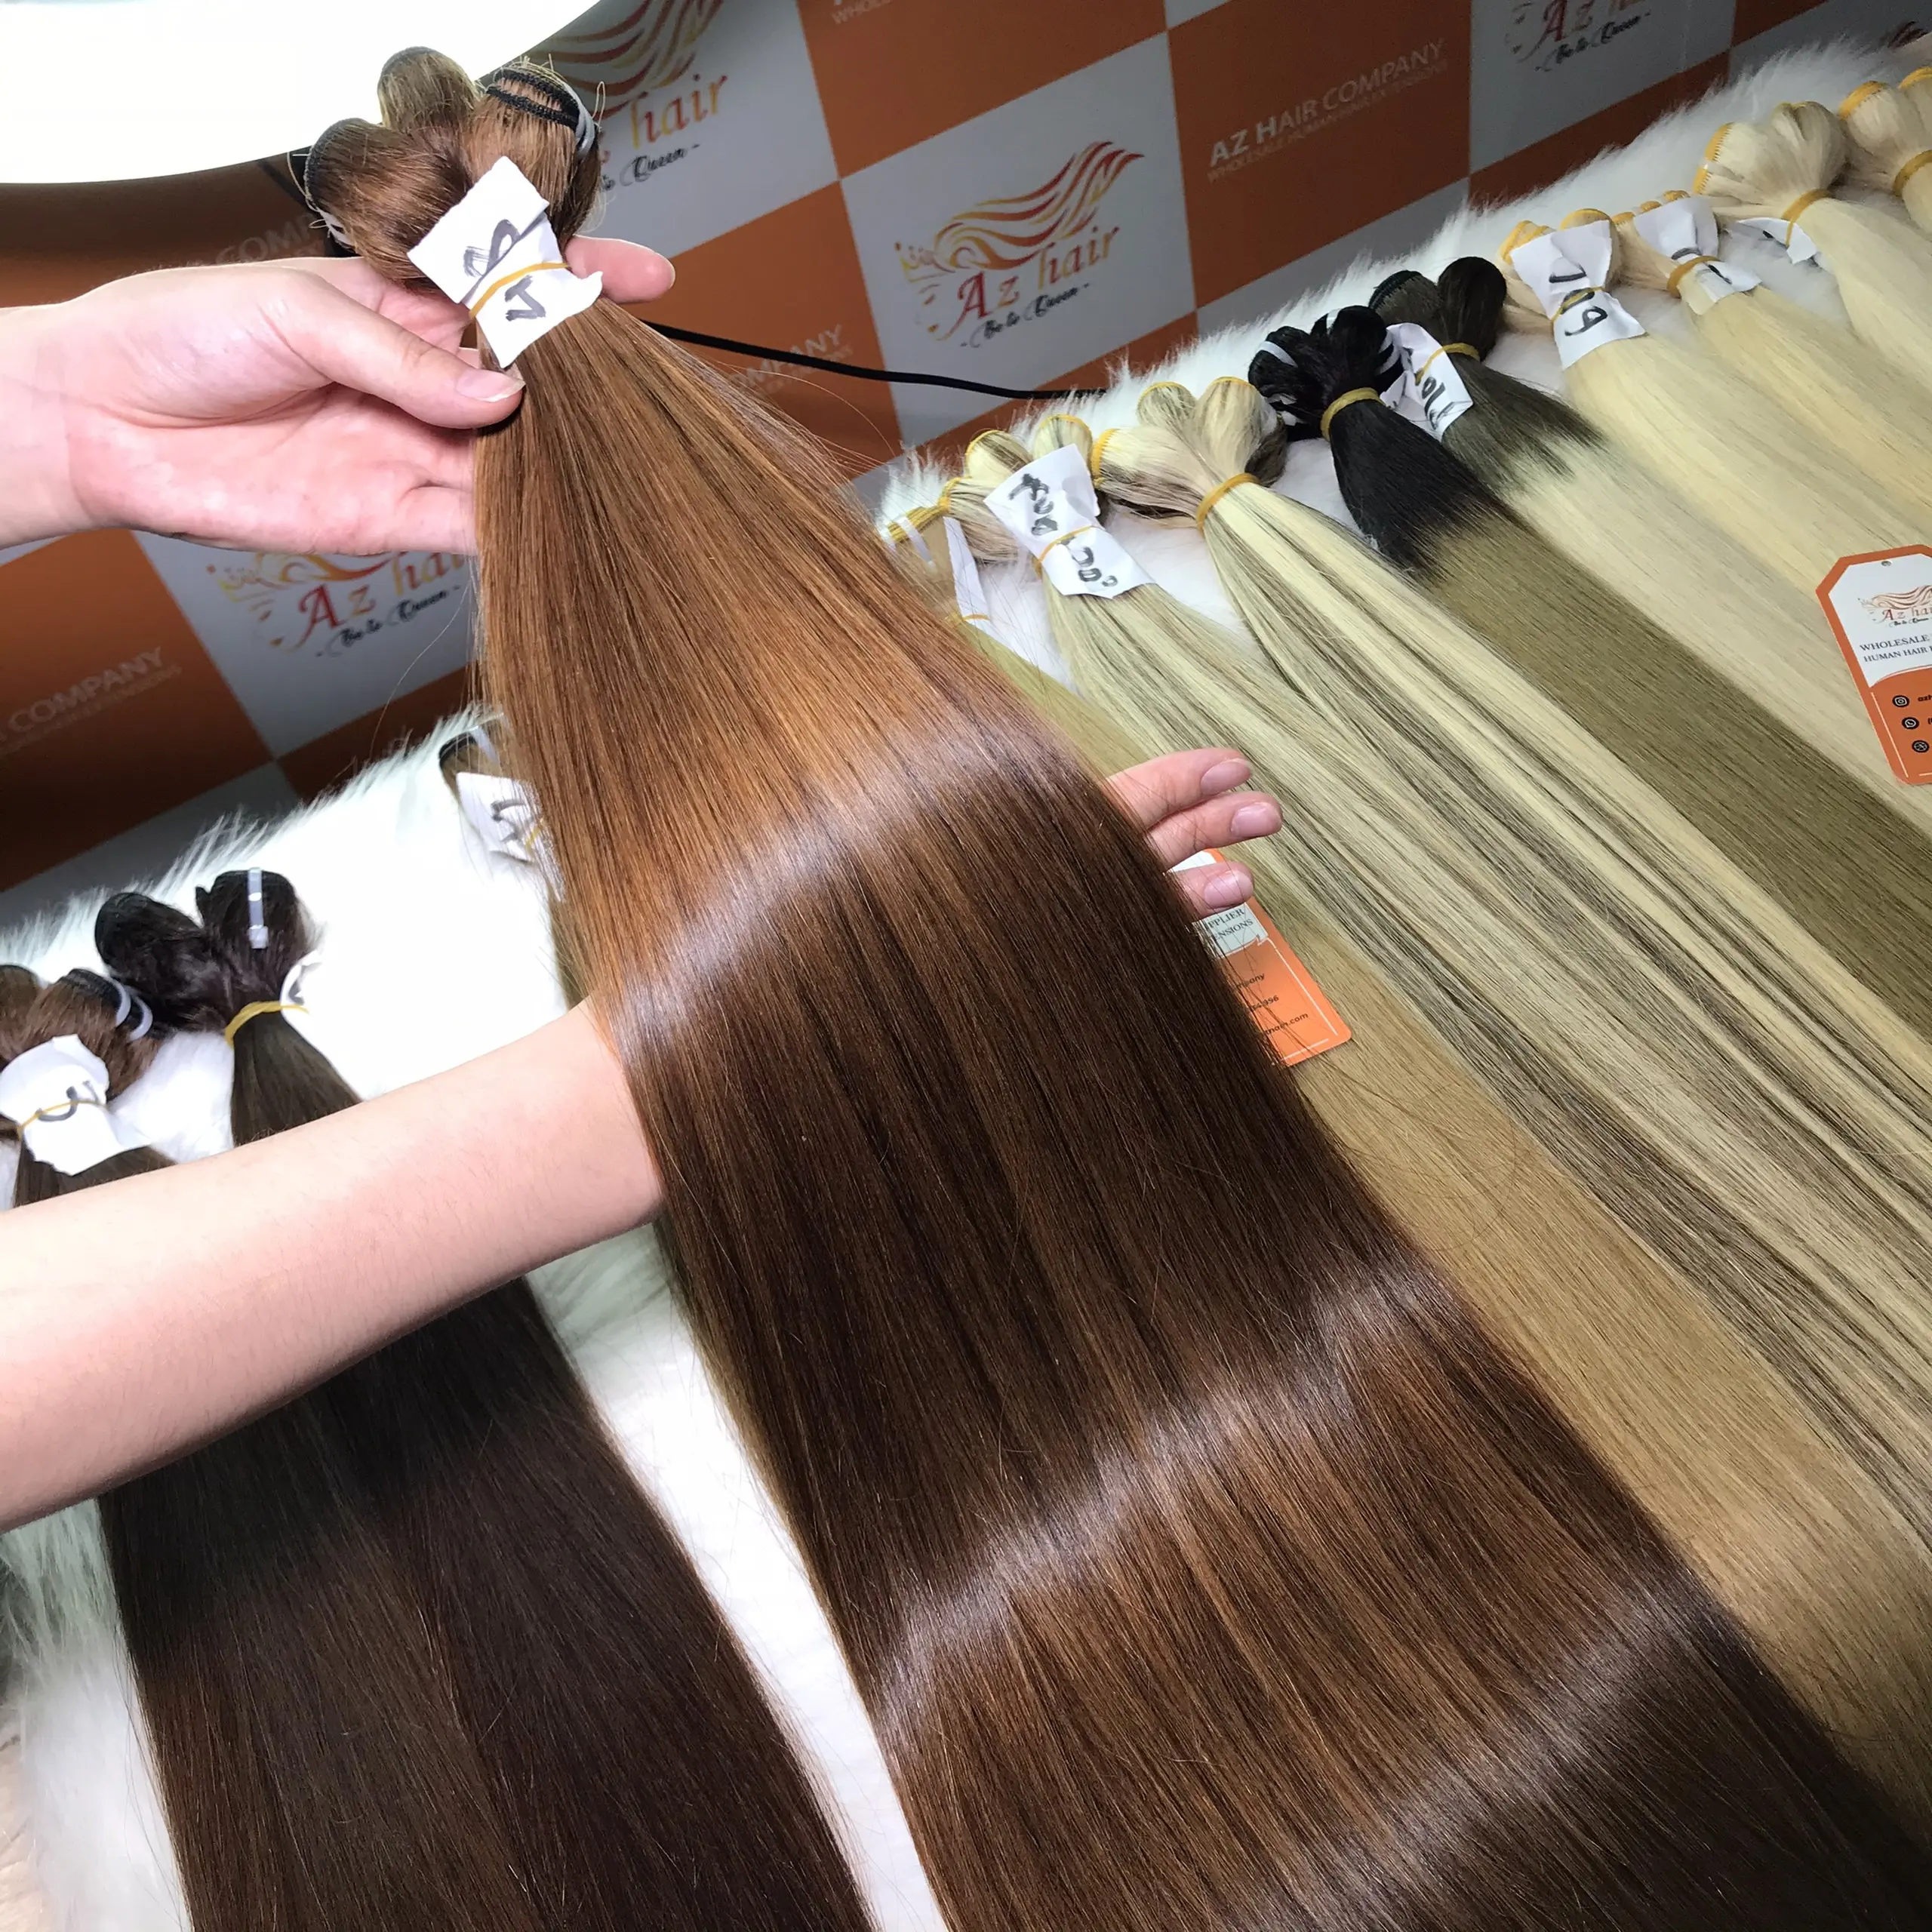 Schnelle Lieferung Vietnam esische natürliche gerade dunkelbraune Farbe Hochwertiges menschliches Haar zum Verkauf